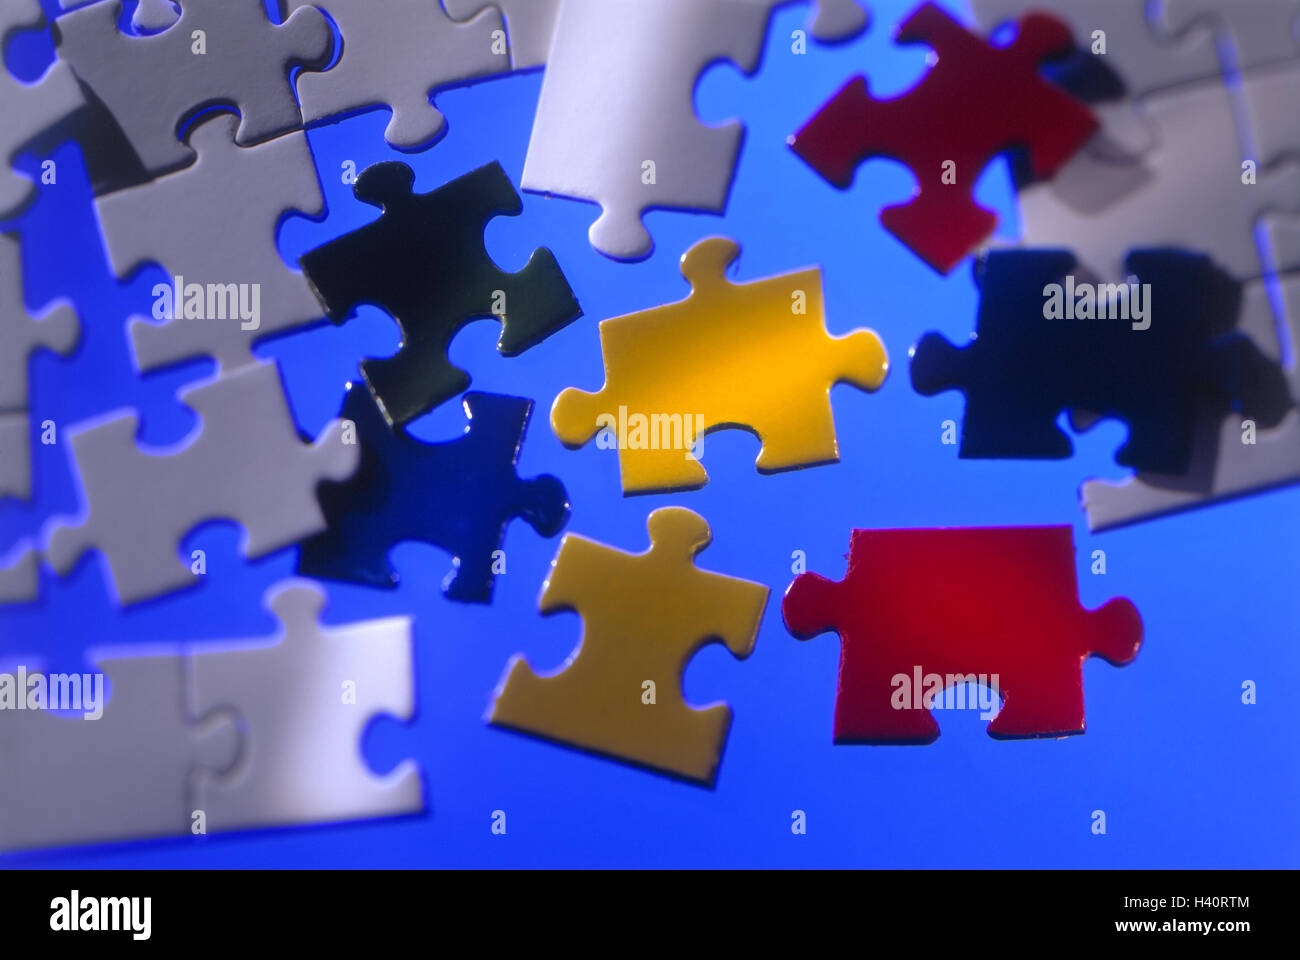 Jigsaw Puzzle, de cerca, la vida, la fotografía del producto, cortes,  piezas de rompecabezas, juegos, rompecabezas, rompecabezas, compatibilidad,  conexión, componer, pegar, complementar, completar, complementar,  brillantemente, detalle, desenfoque ...